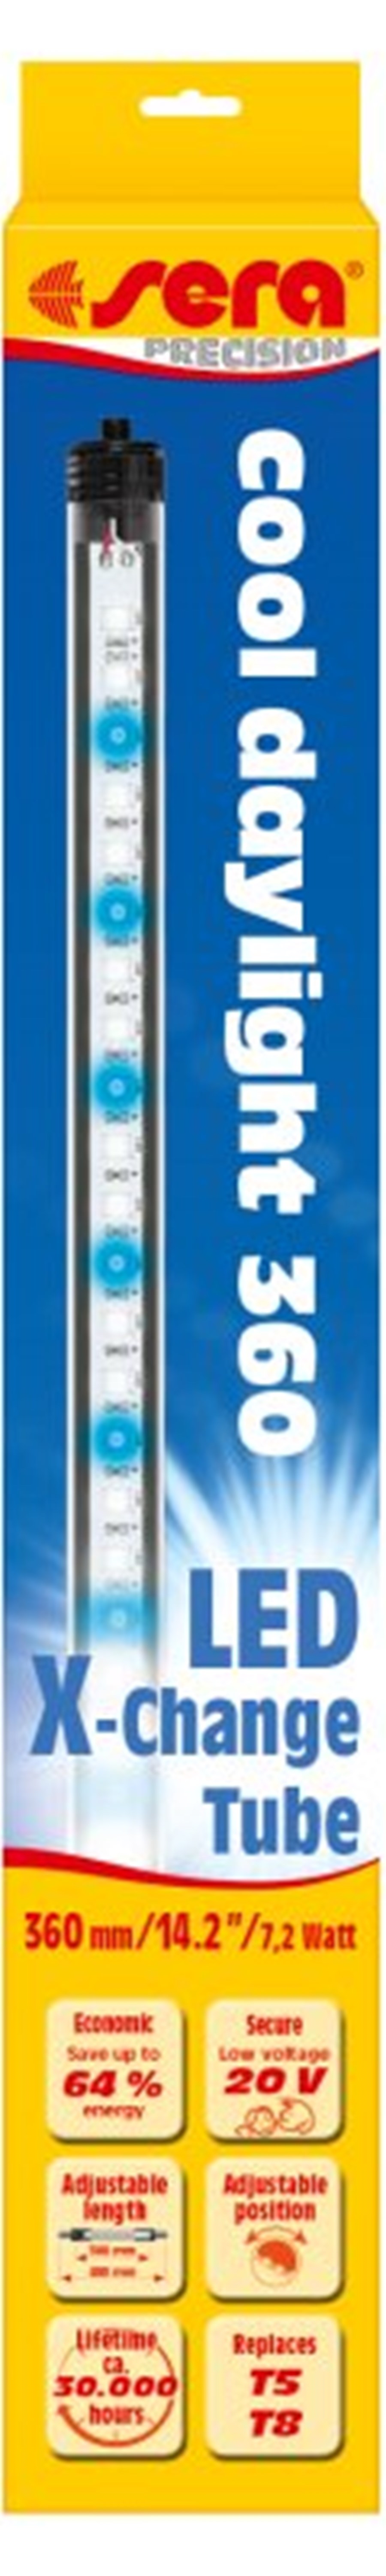 sera LED cool daylight 1120 mm / 23 W